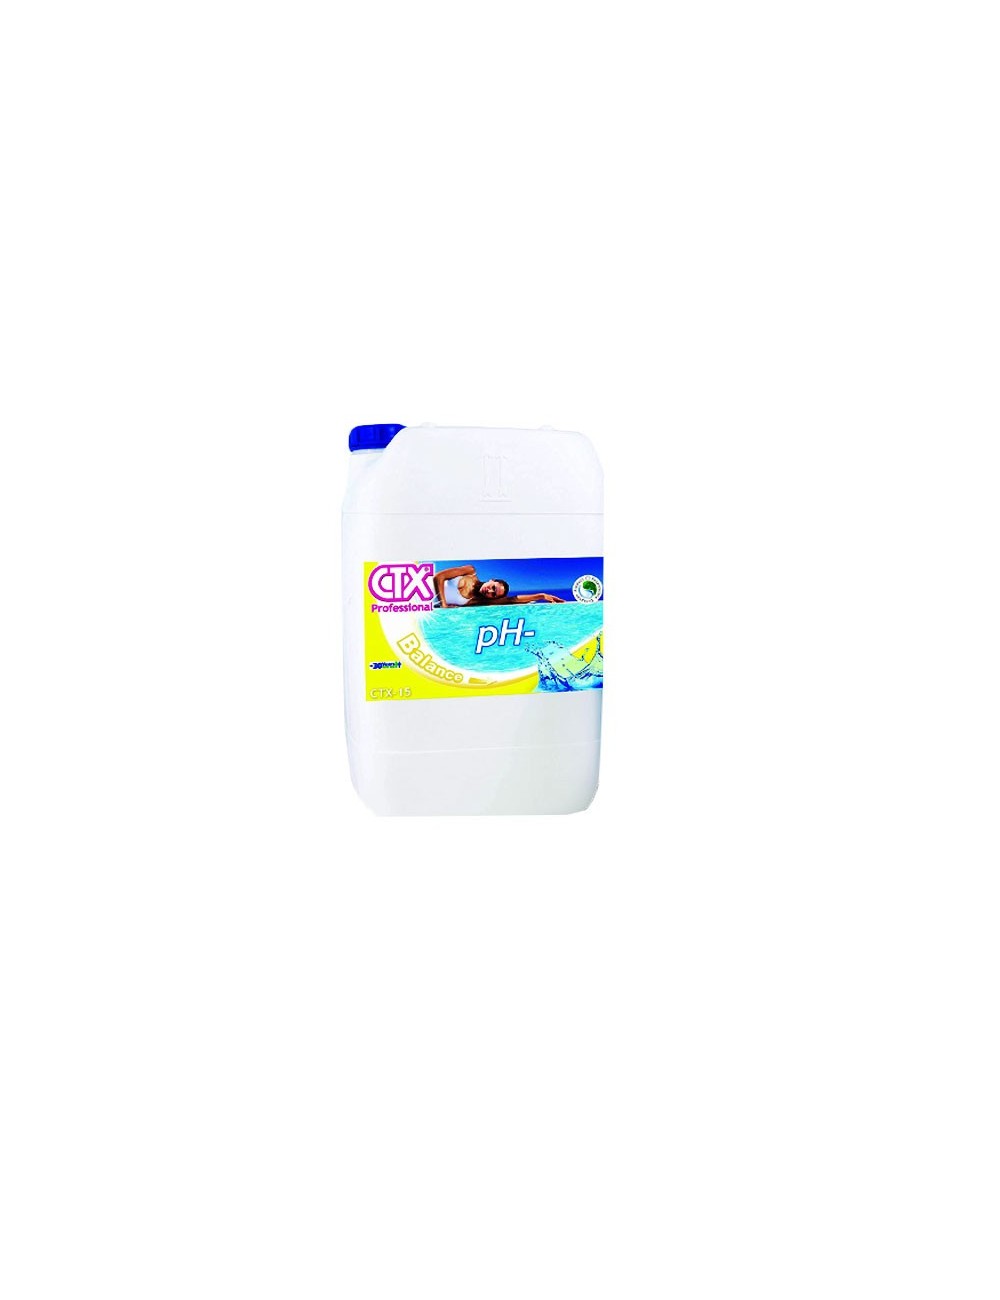 CTX-15 pH- 25 kg - Prodotto liquido per abbassare il pH e igienizzare la piscina *VENDITA PROIBITA AI PRIVATI